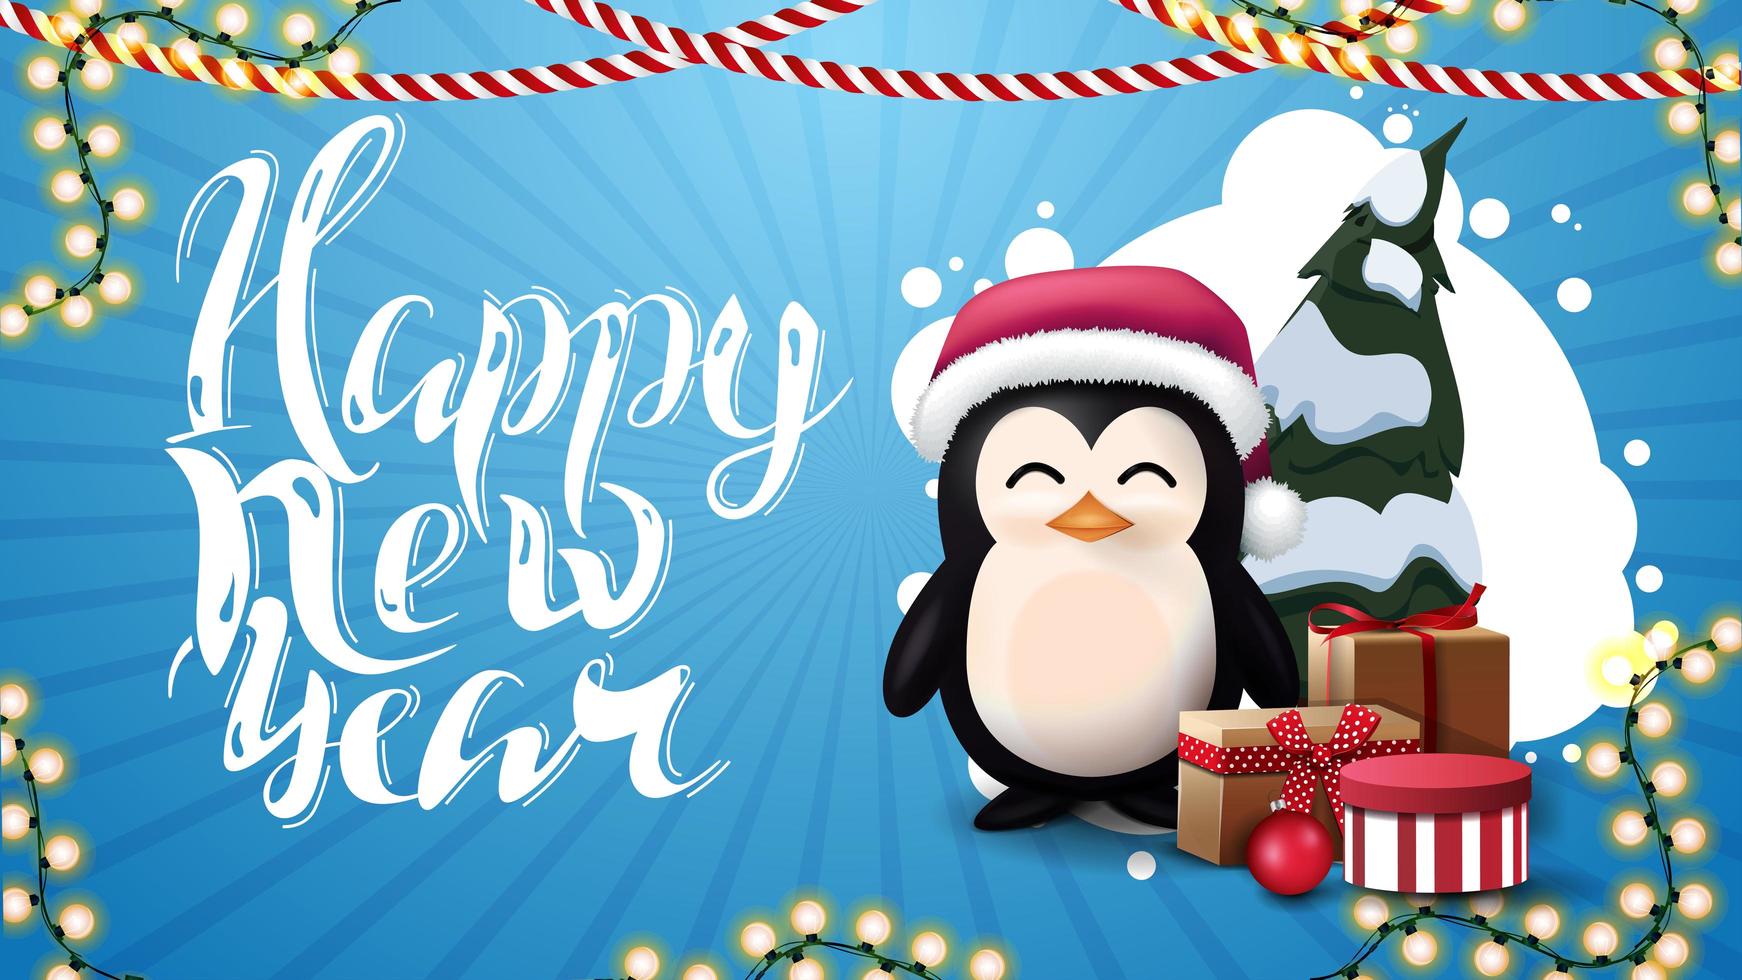 Feliz año nuevo, postal azul con nube abstracta de círculos, guirnaldas y pingüino en sombrero de santa claus con regalos vector